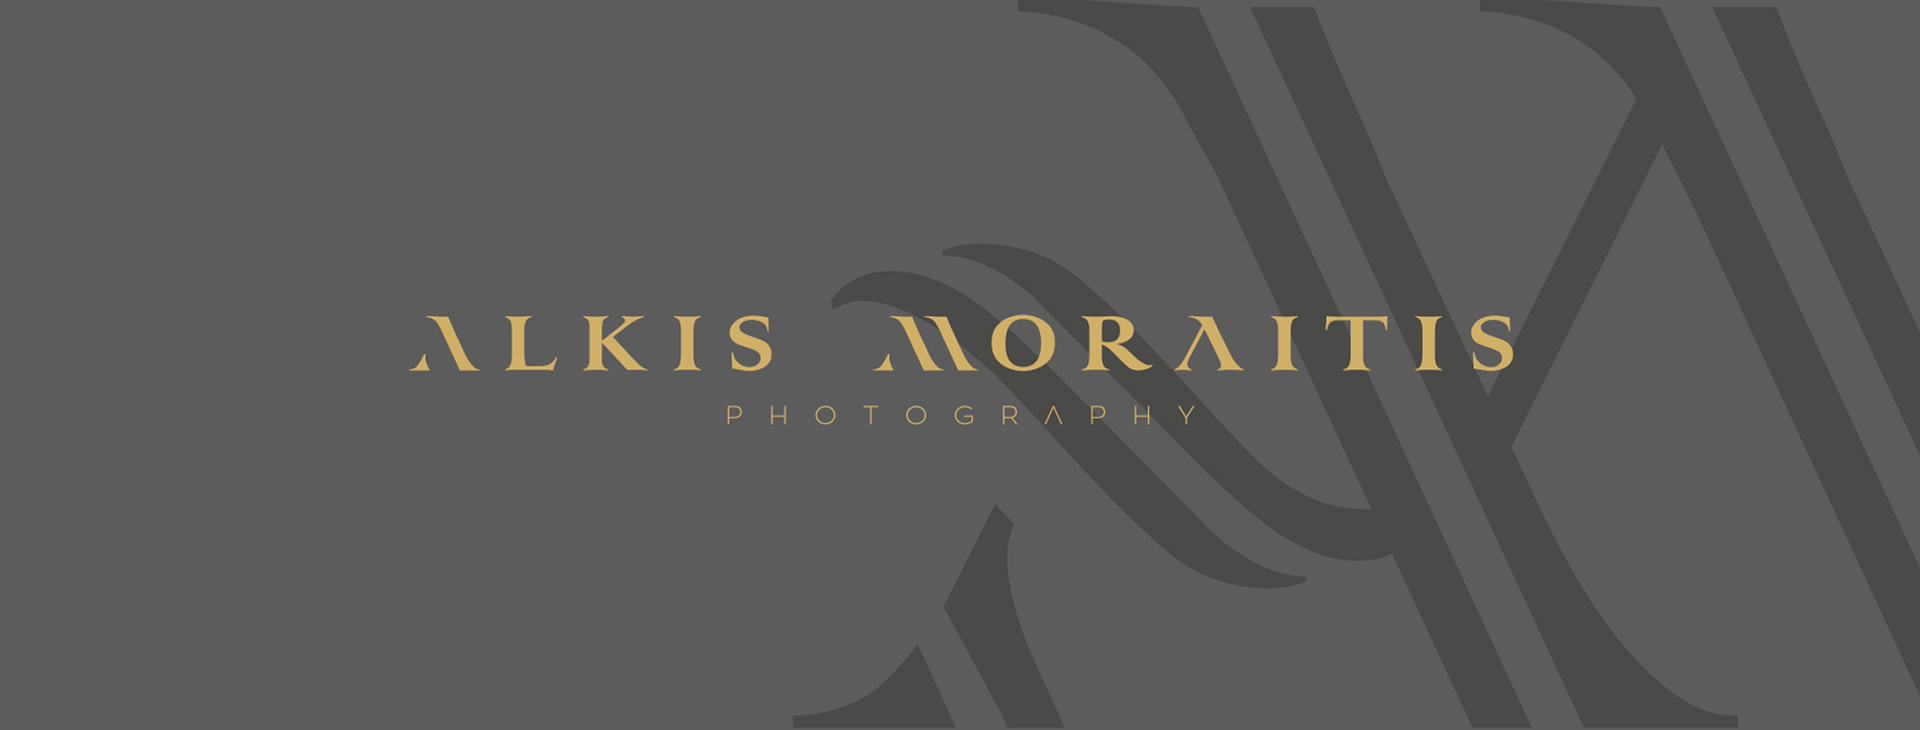 Alkis Moraitis